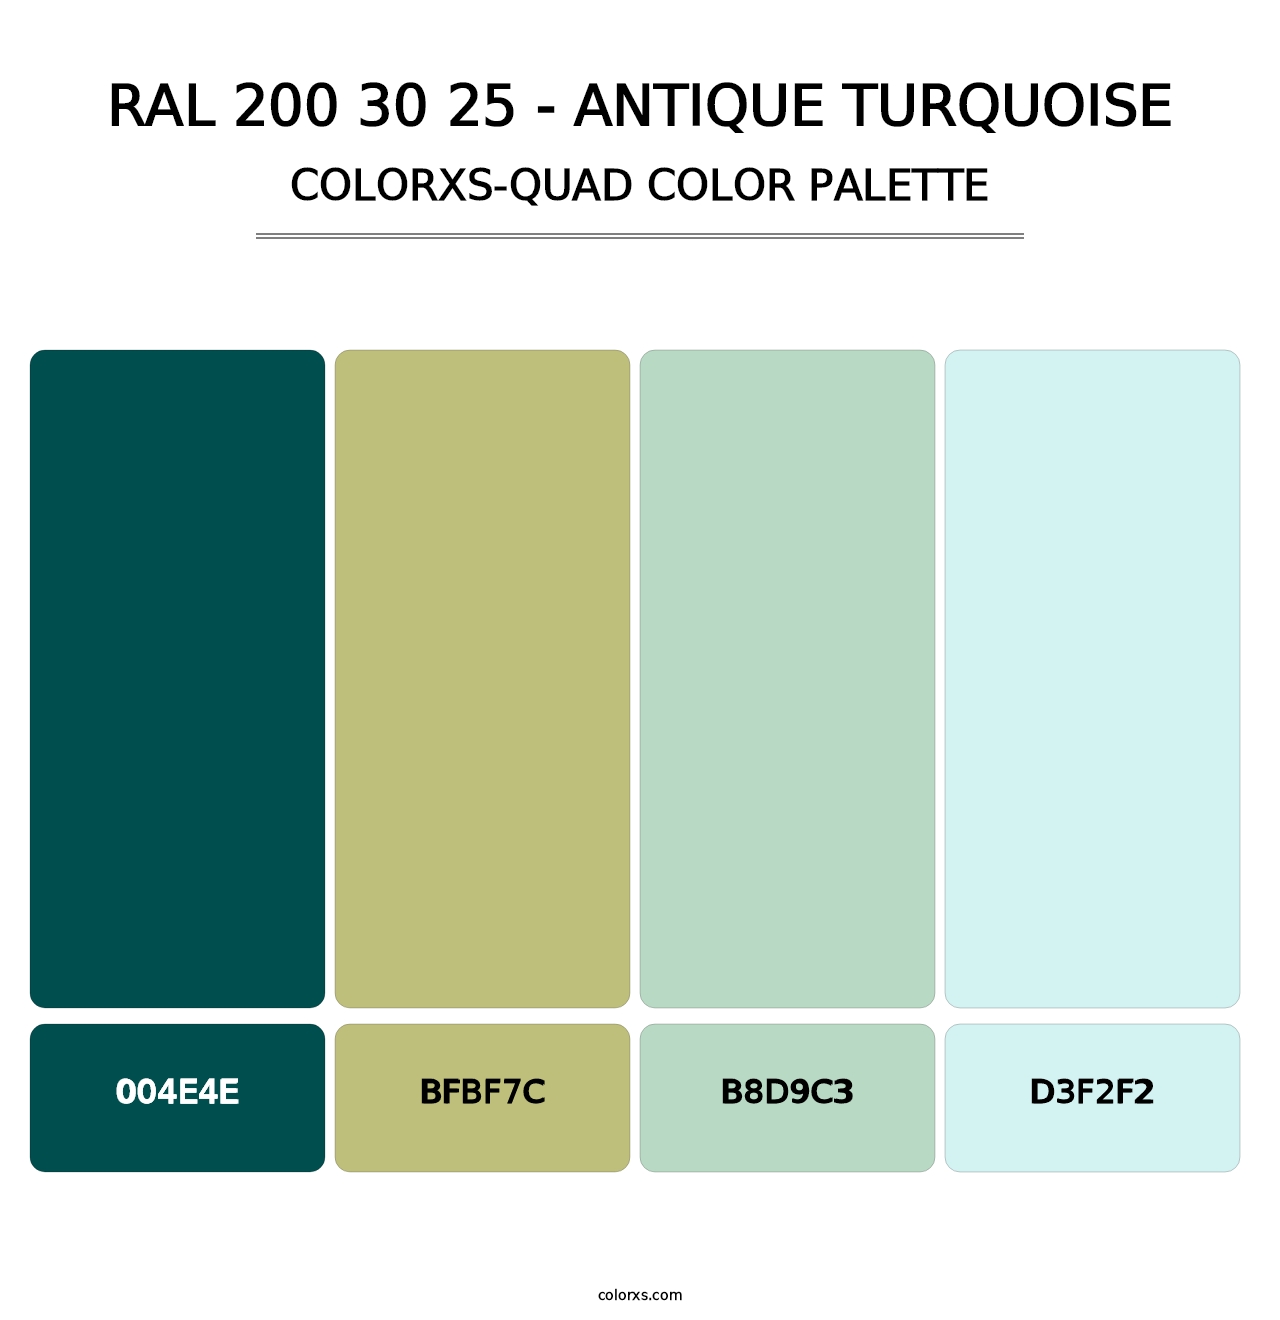 RAL 200 30 25 - Antique Turquoise - Colorxs Quad Palette